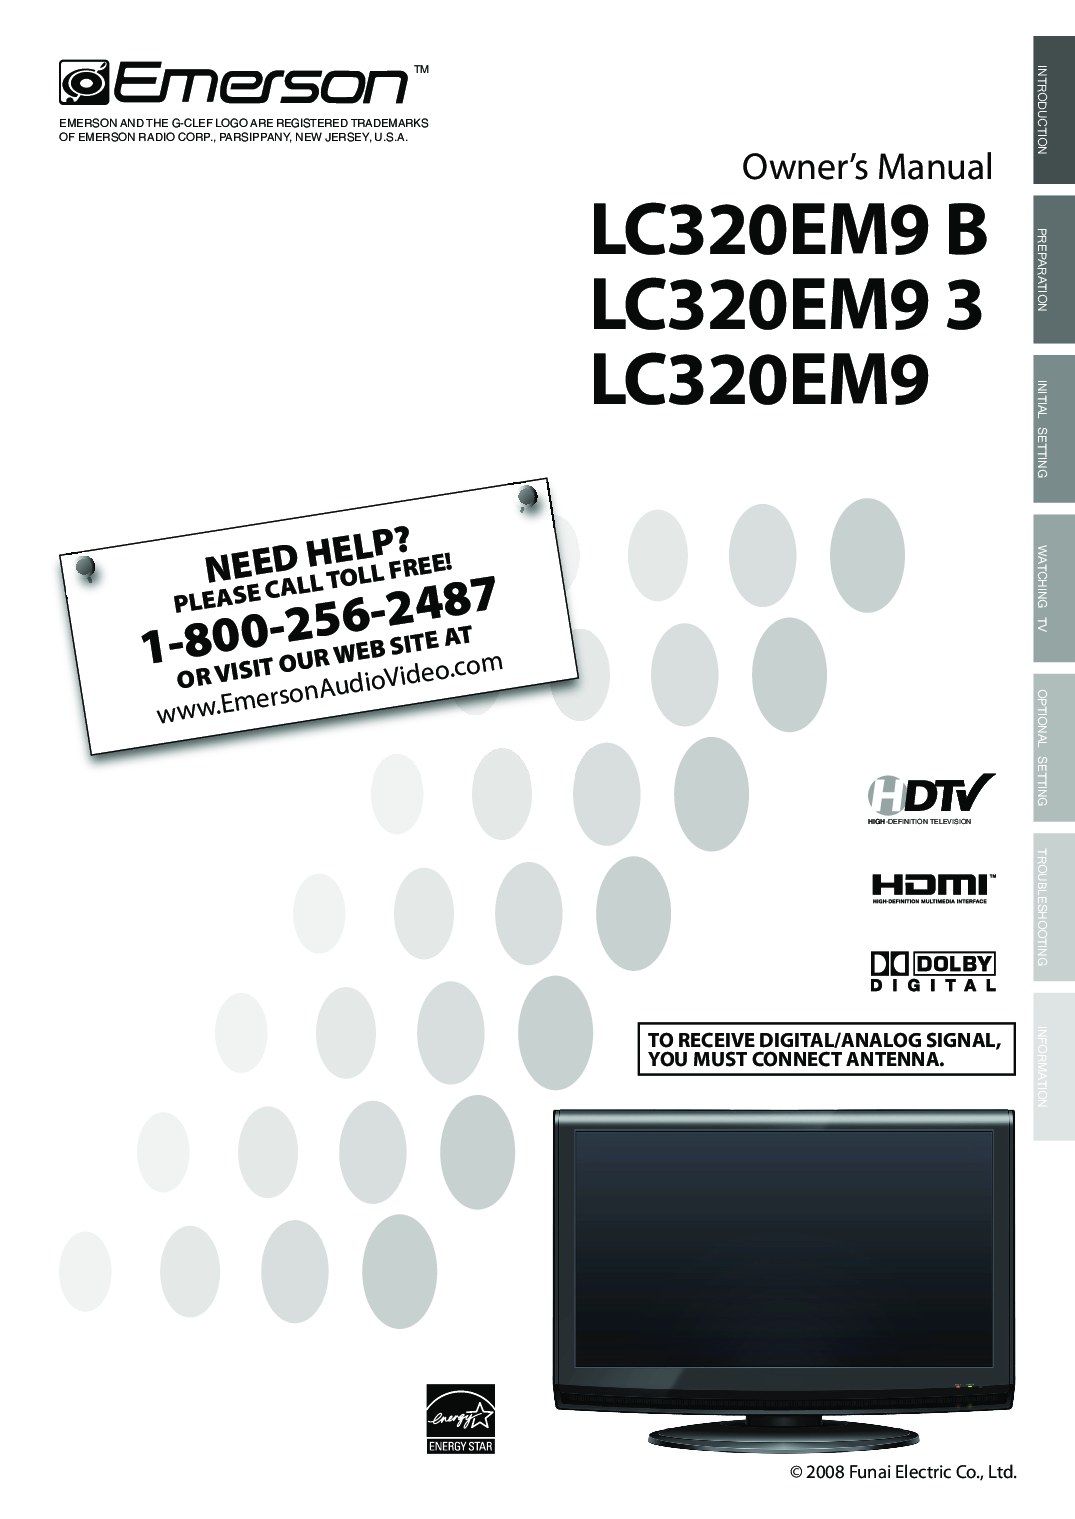 Emerson LC320EM9 B, LC320EM9 3, LC320EM9 User Manual